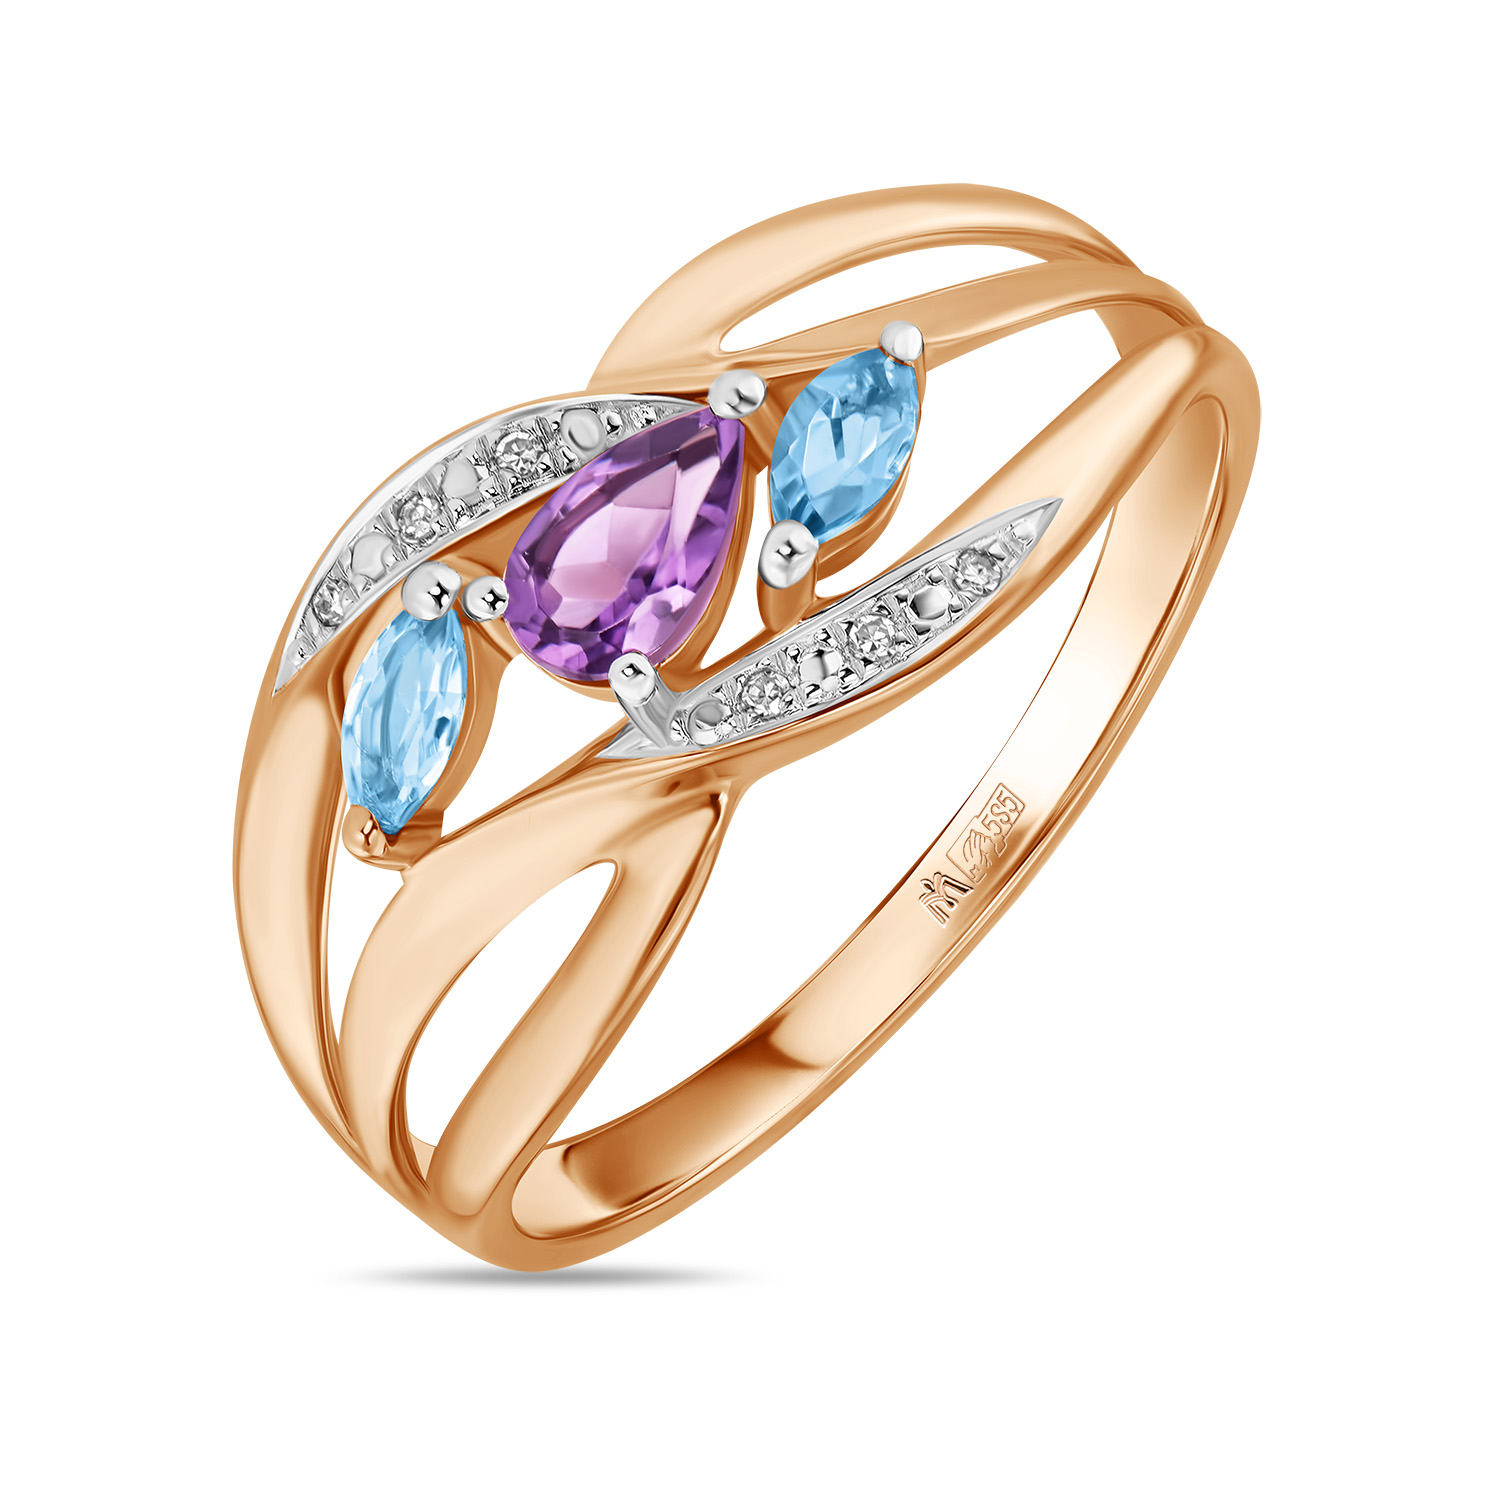 Кольца МЮЗ Золотое кольцо с аметистом, топазом и бриллиантами кольца мюз золотое кольцо с аметистом и топазом